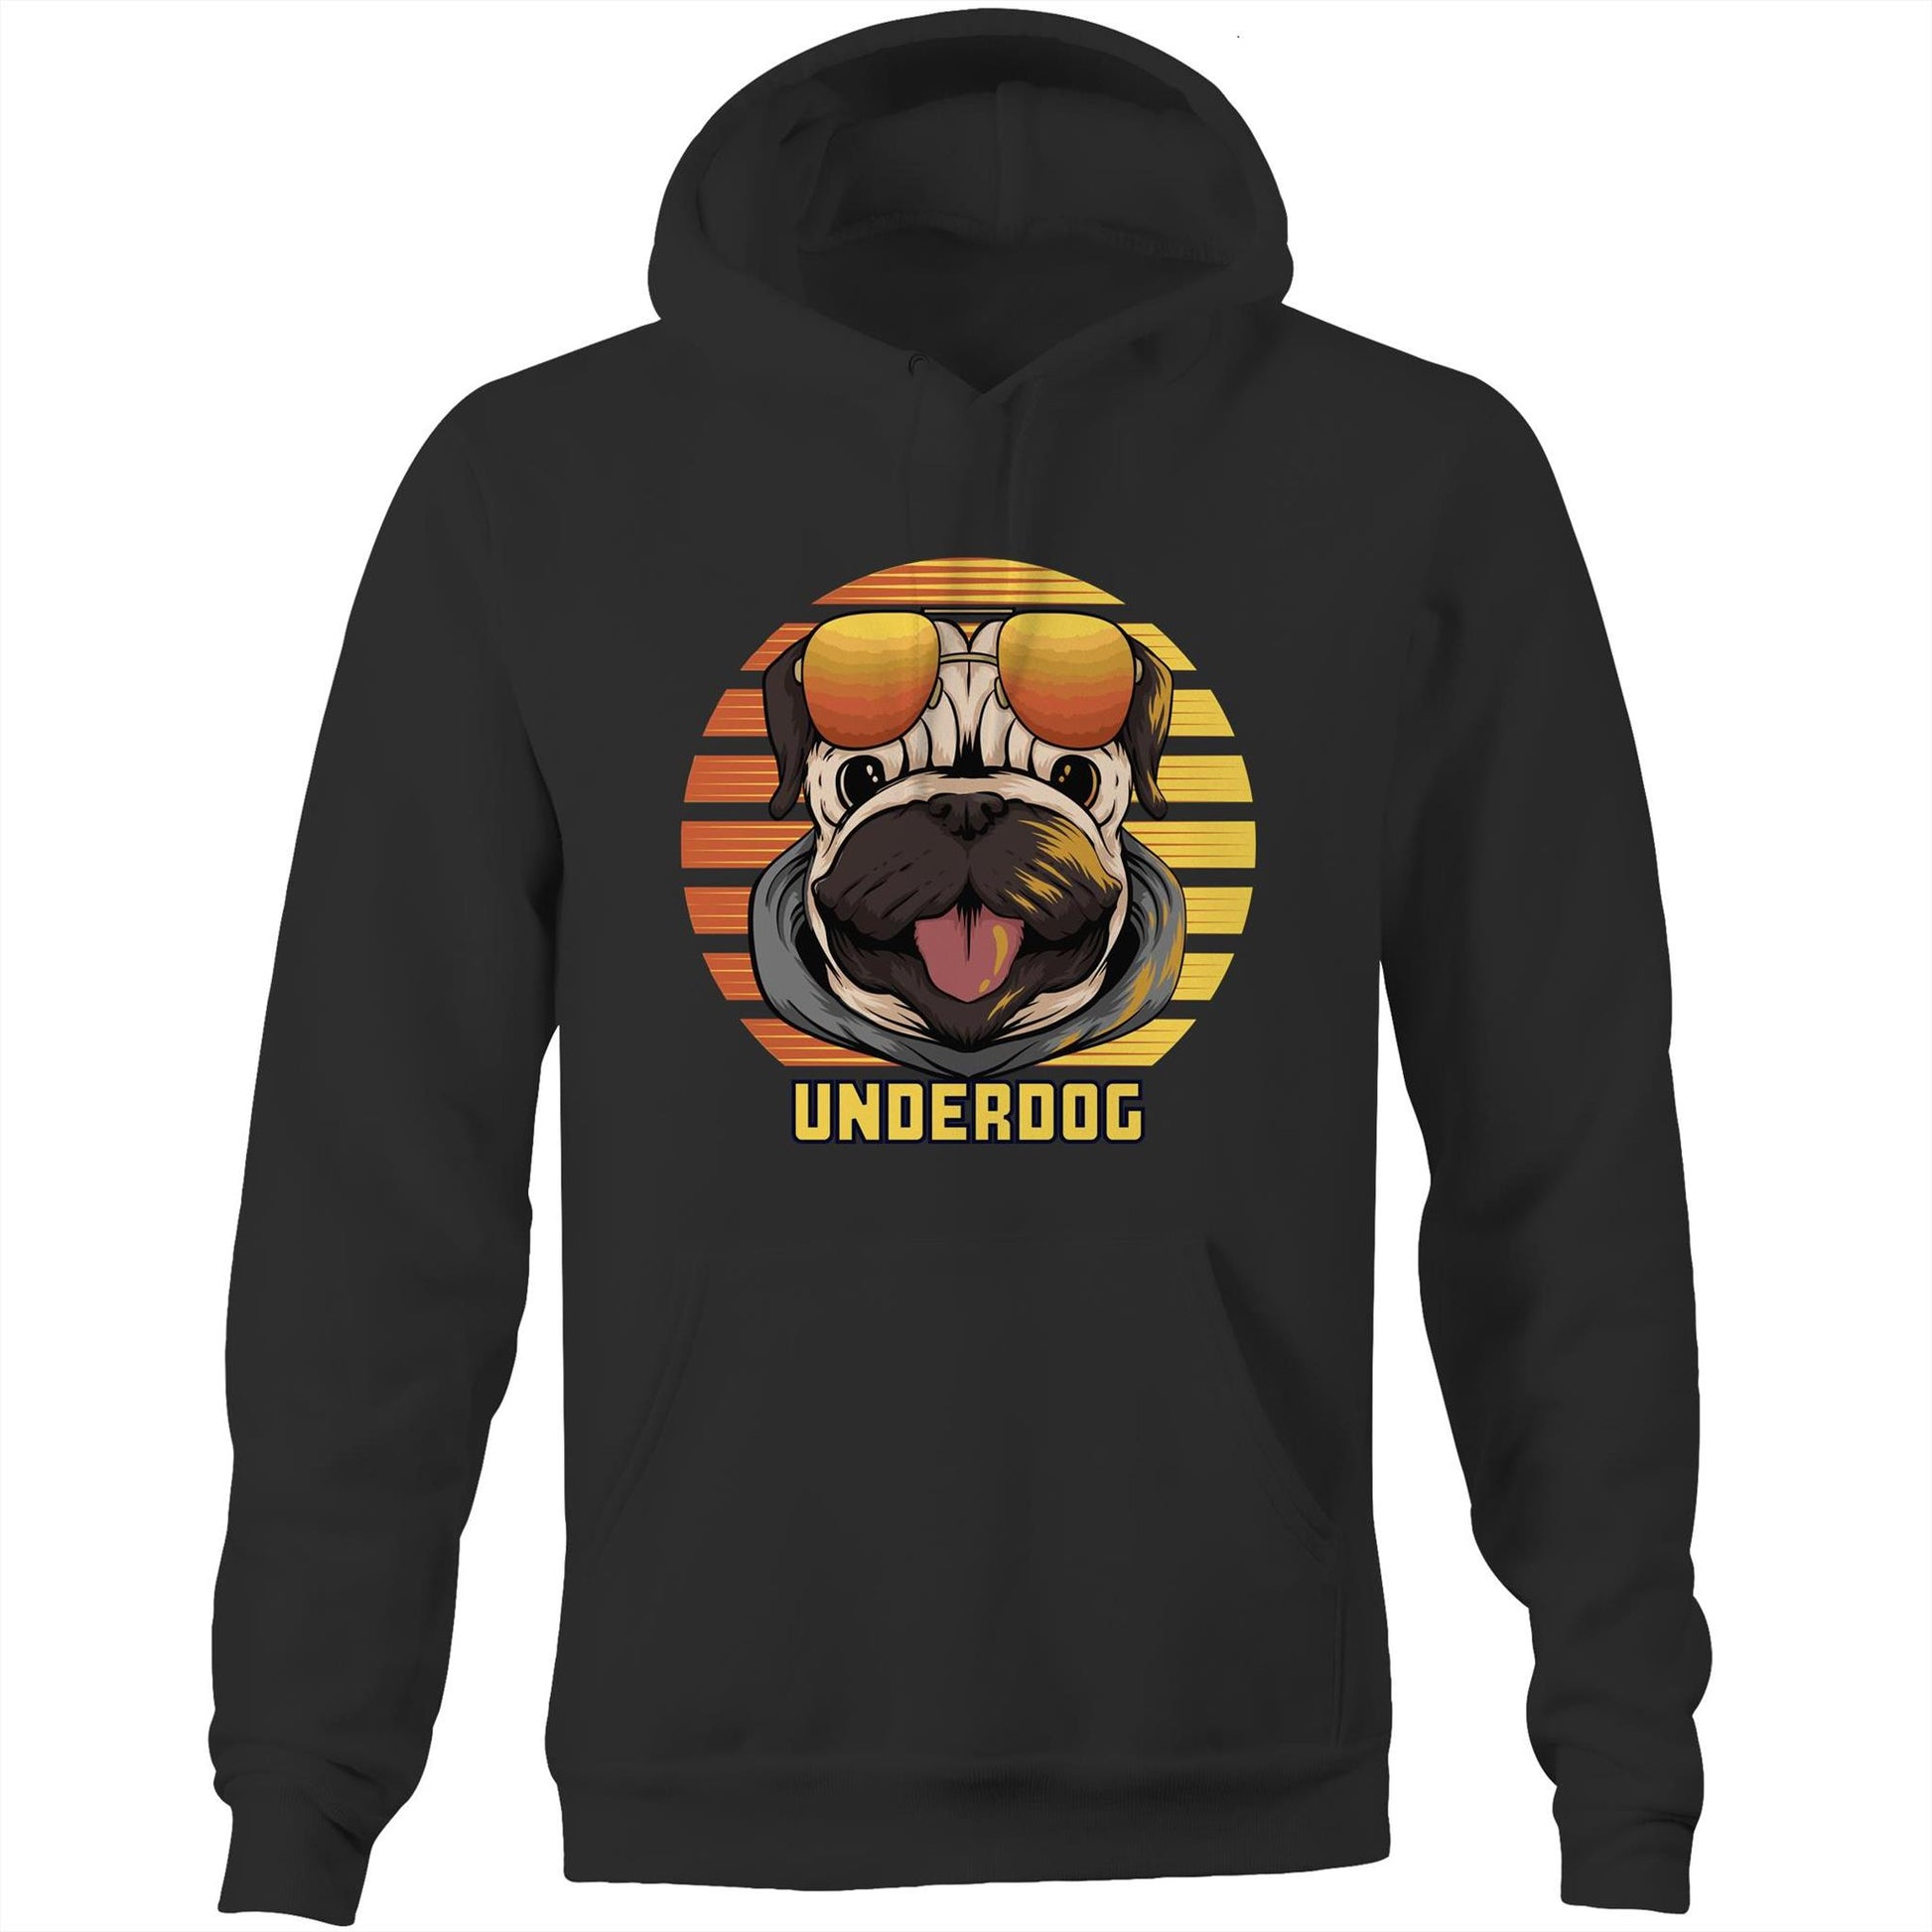 Underdog - Pocket Hoodie Sweatshirt Black Hoodie animal